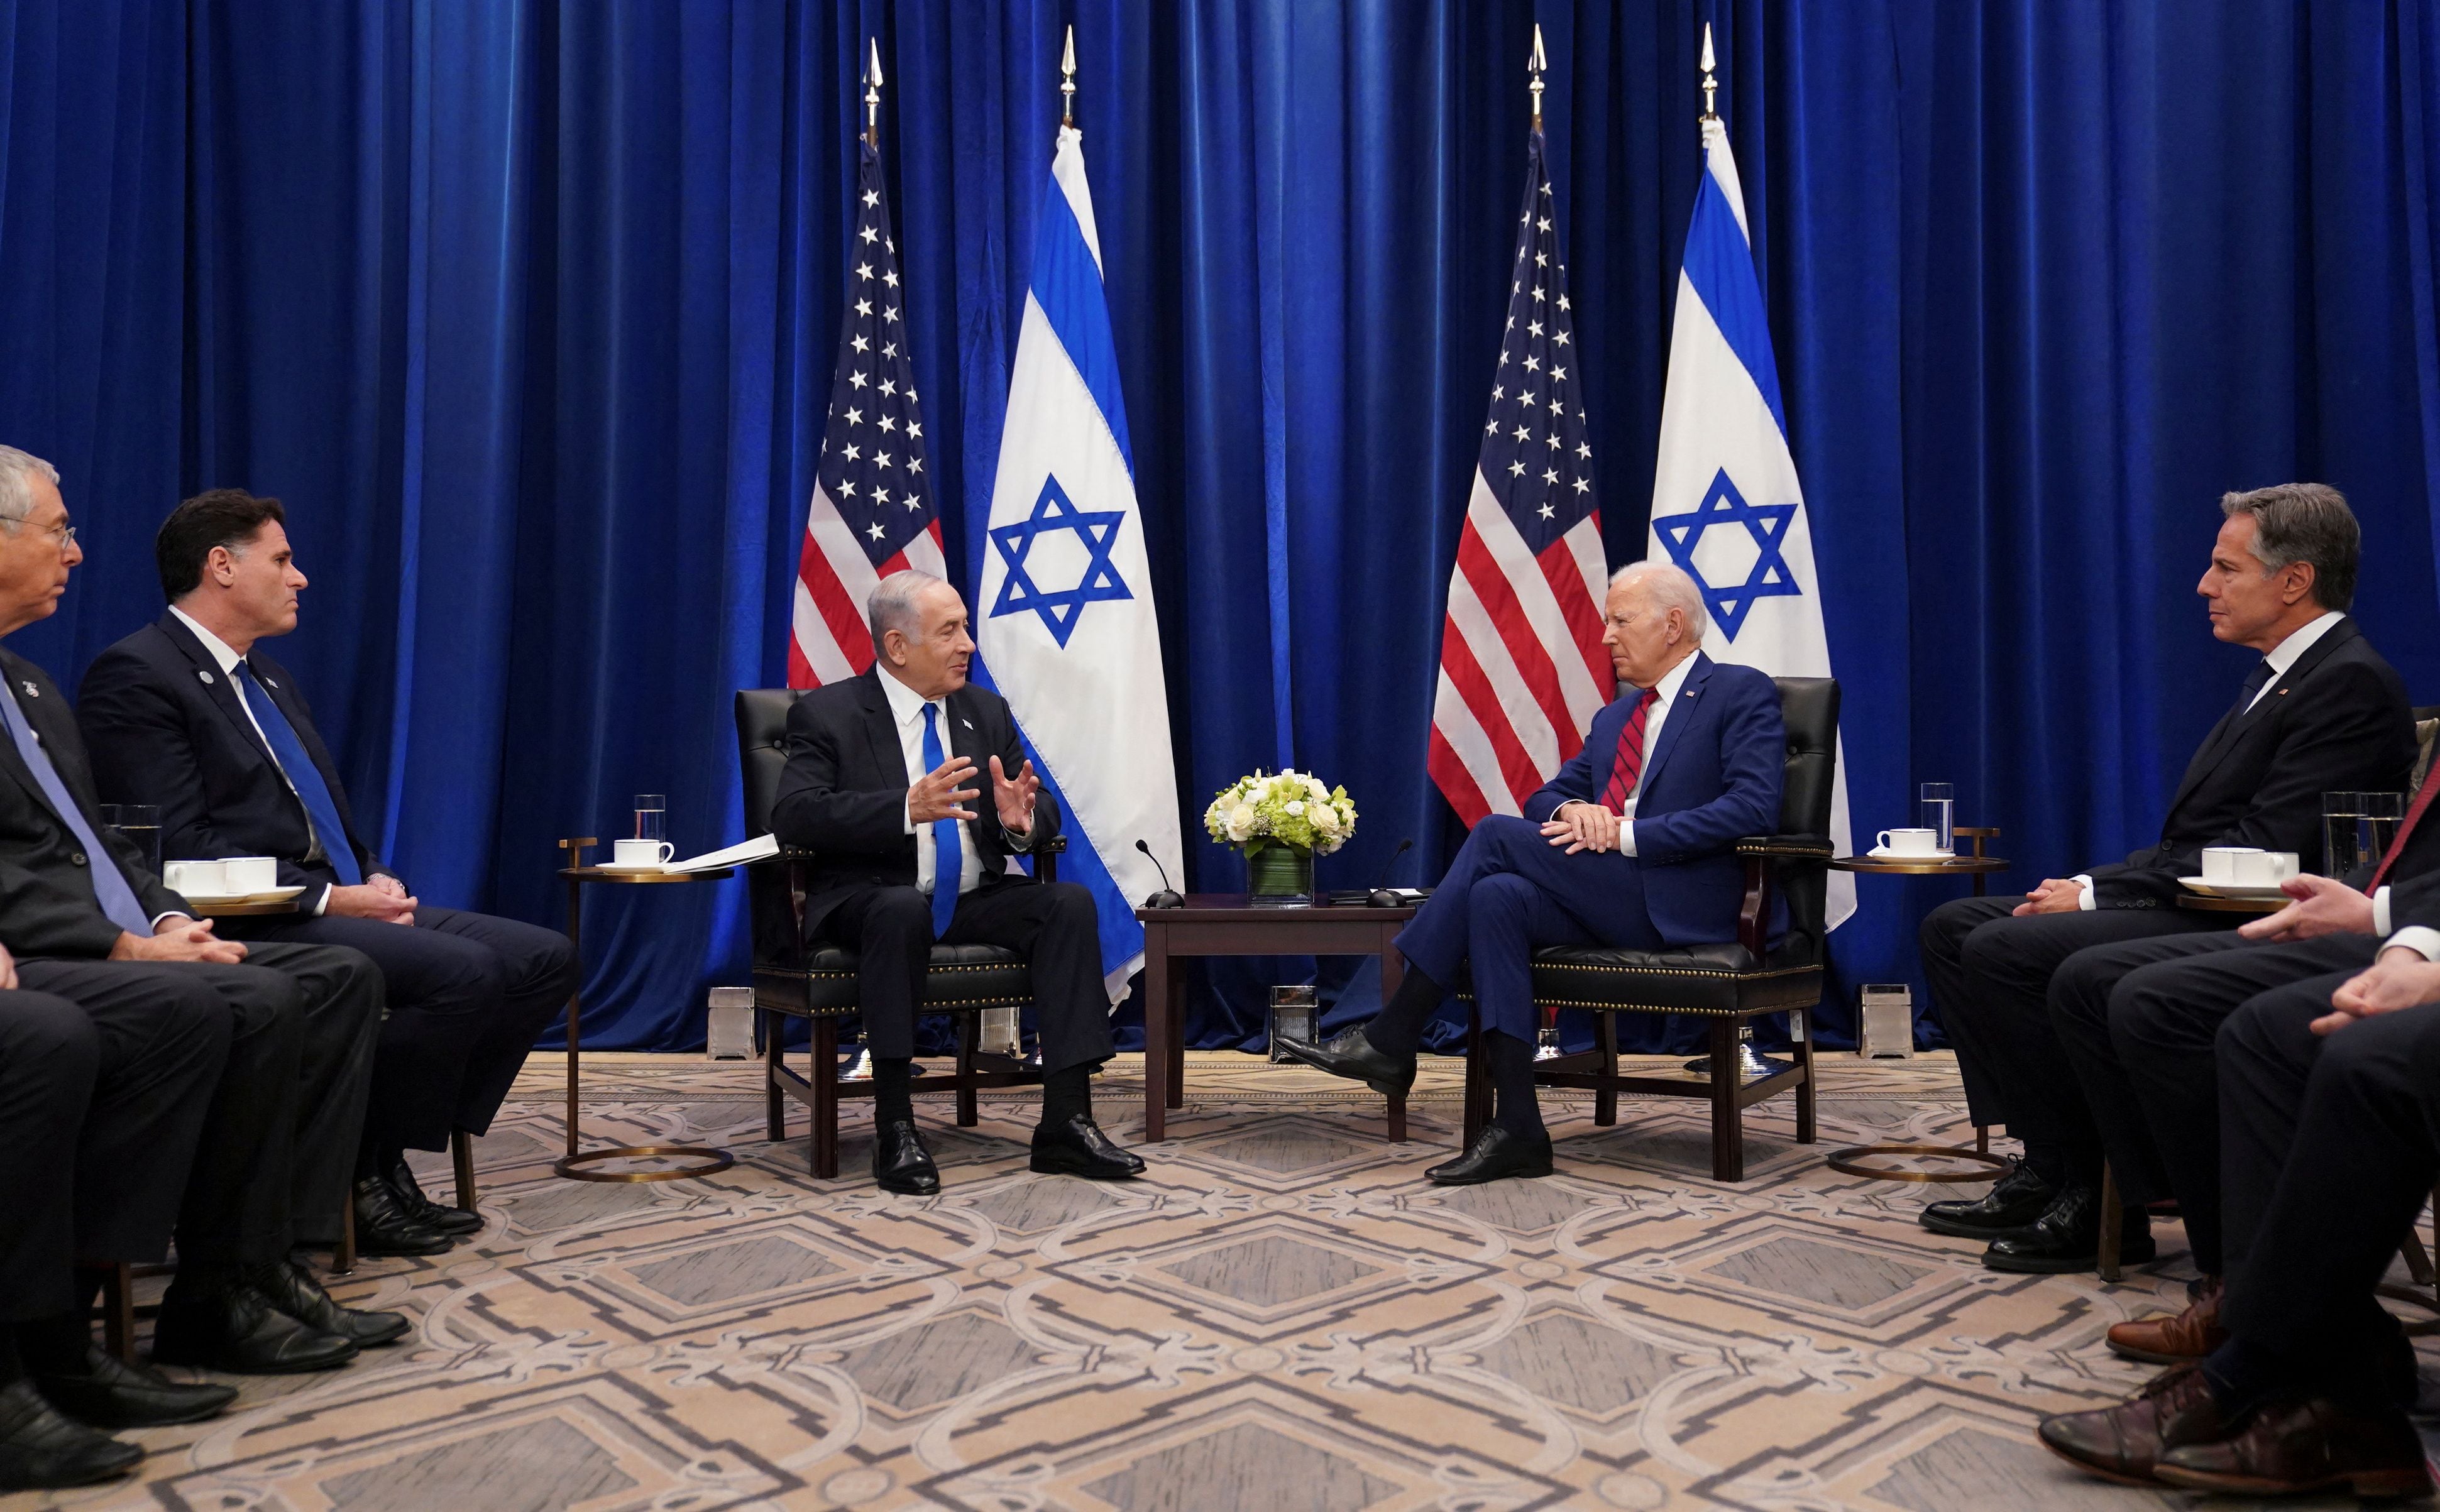 El encuentro la última semana del presidente Joe Biden y el primer ministro Benjamin Netanyahu en Nueva York. Las relaciones se enfriaron a raíz de las medidas extremas tomadas por el israelí. (REUTERS/Kevin Lamarque)